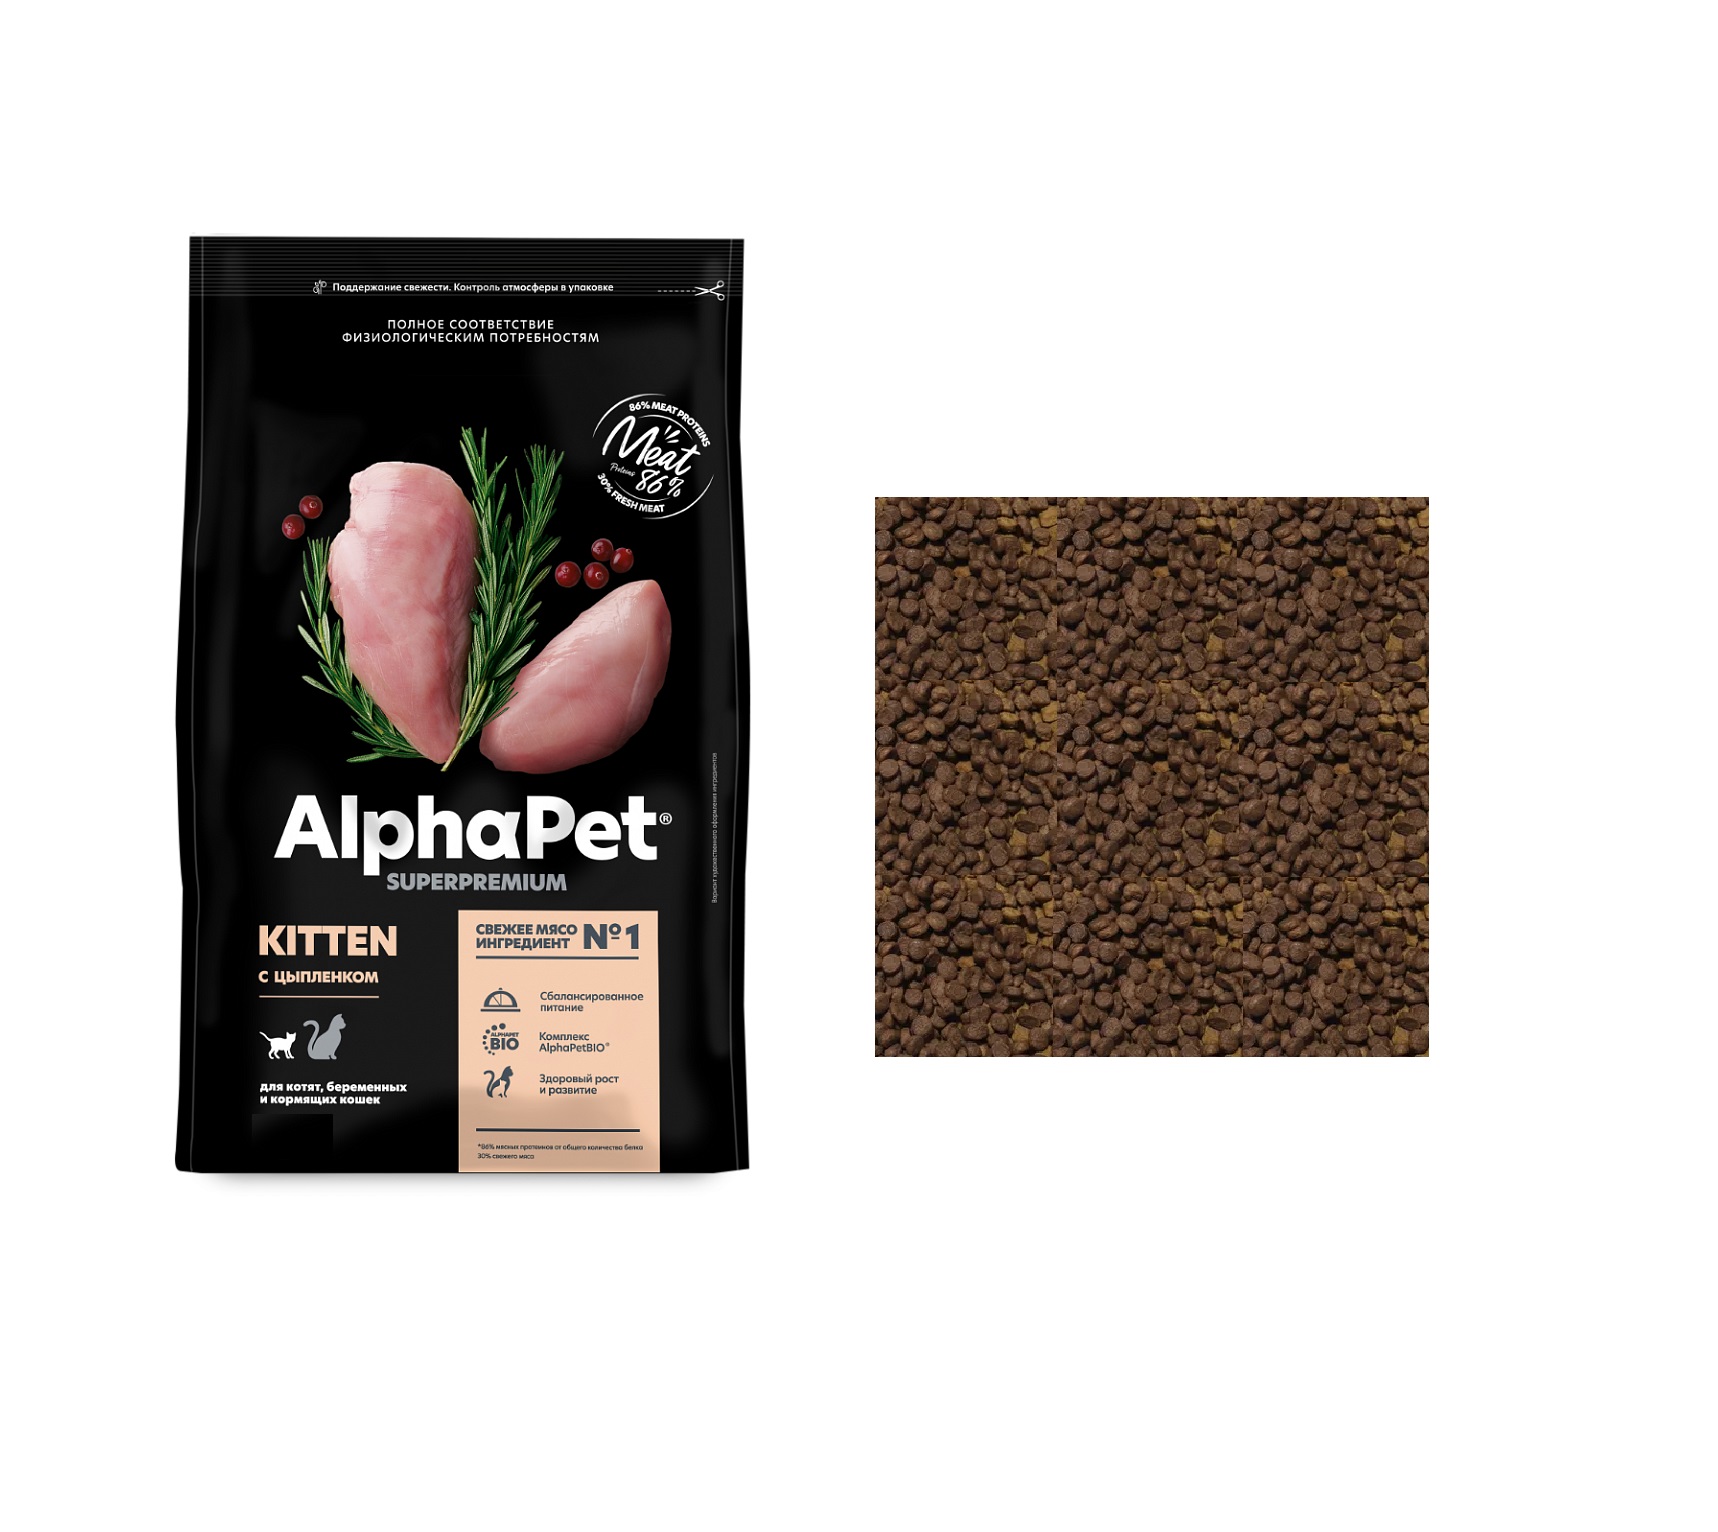 АльфаПет СуперПремиум - весовой 1кг - для КОТЯТ, Цыпленок (Alpha Pet SuperPremium) + Подарок